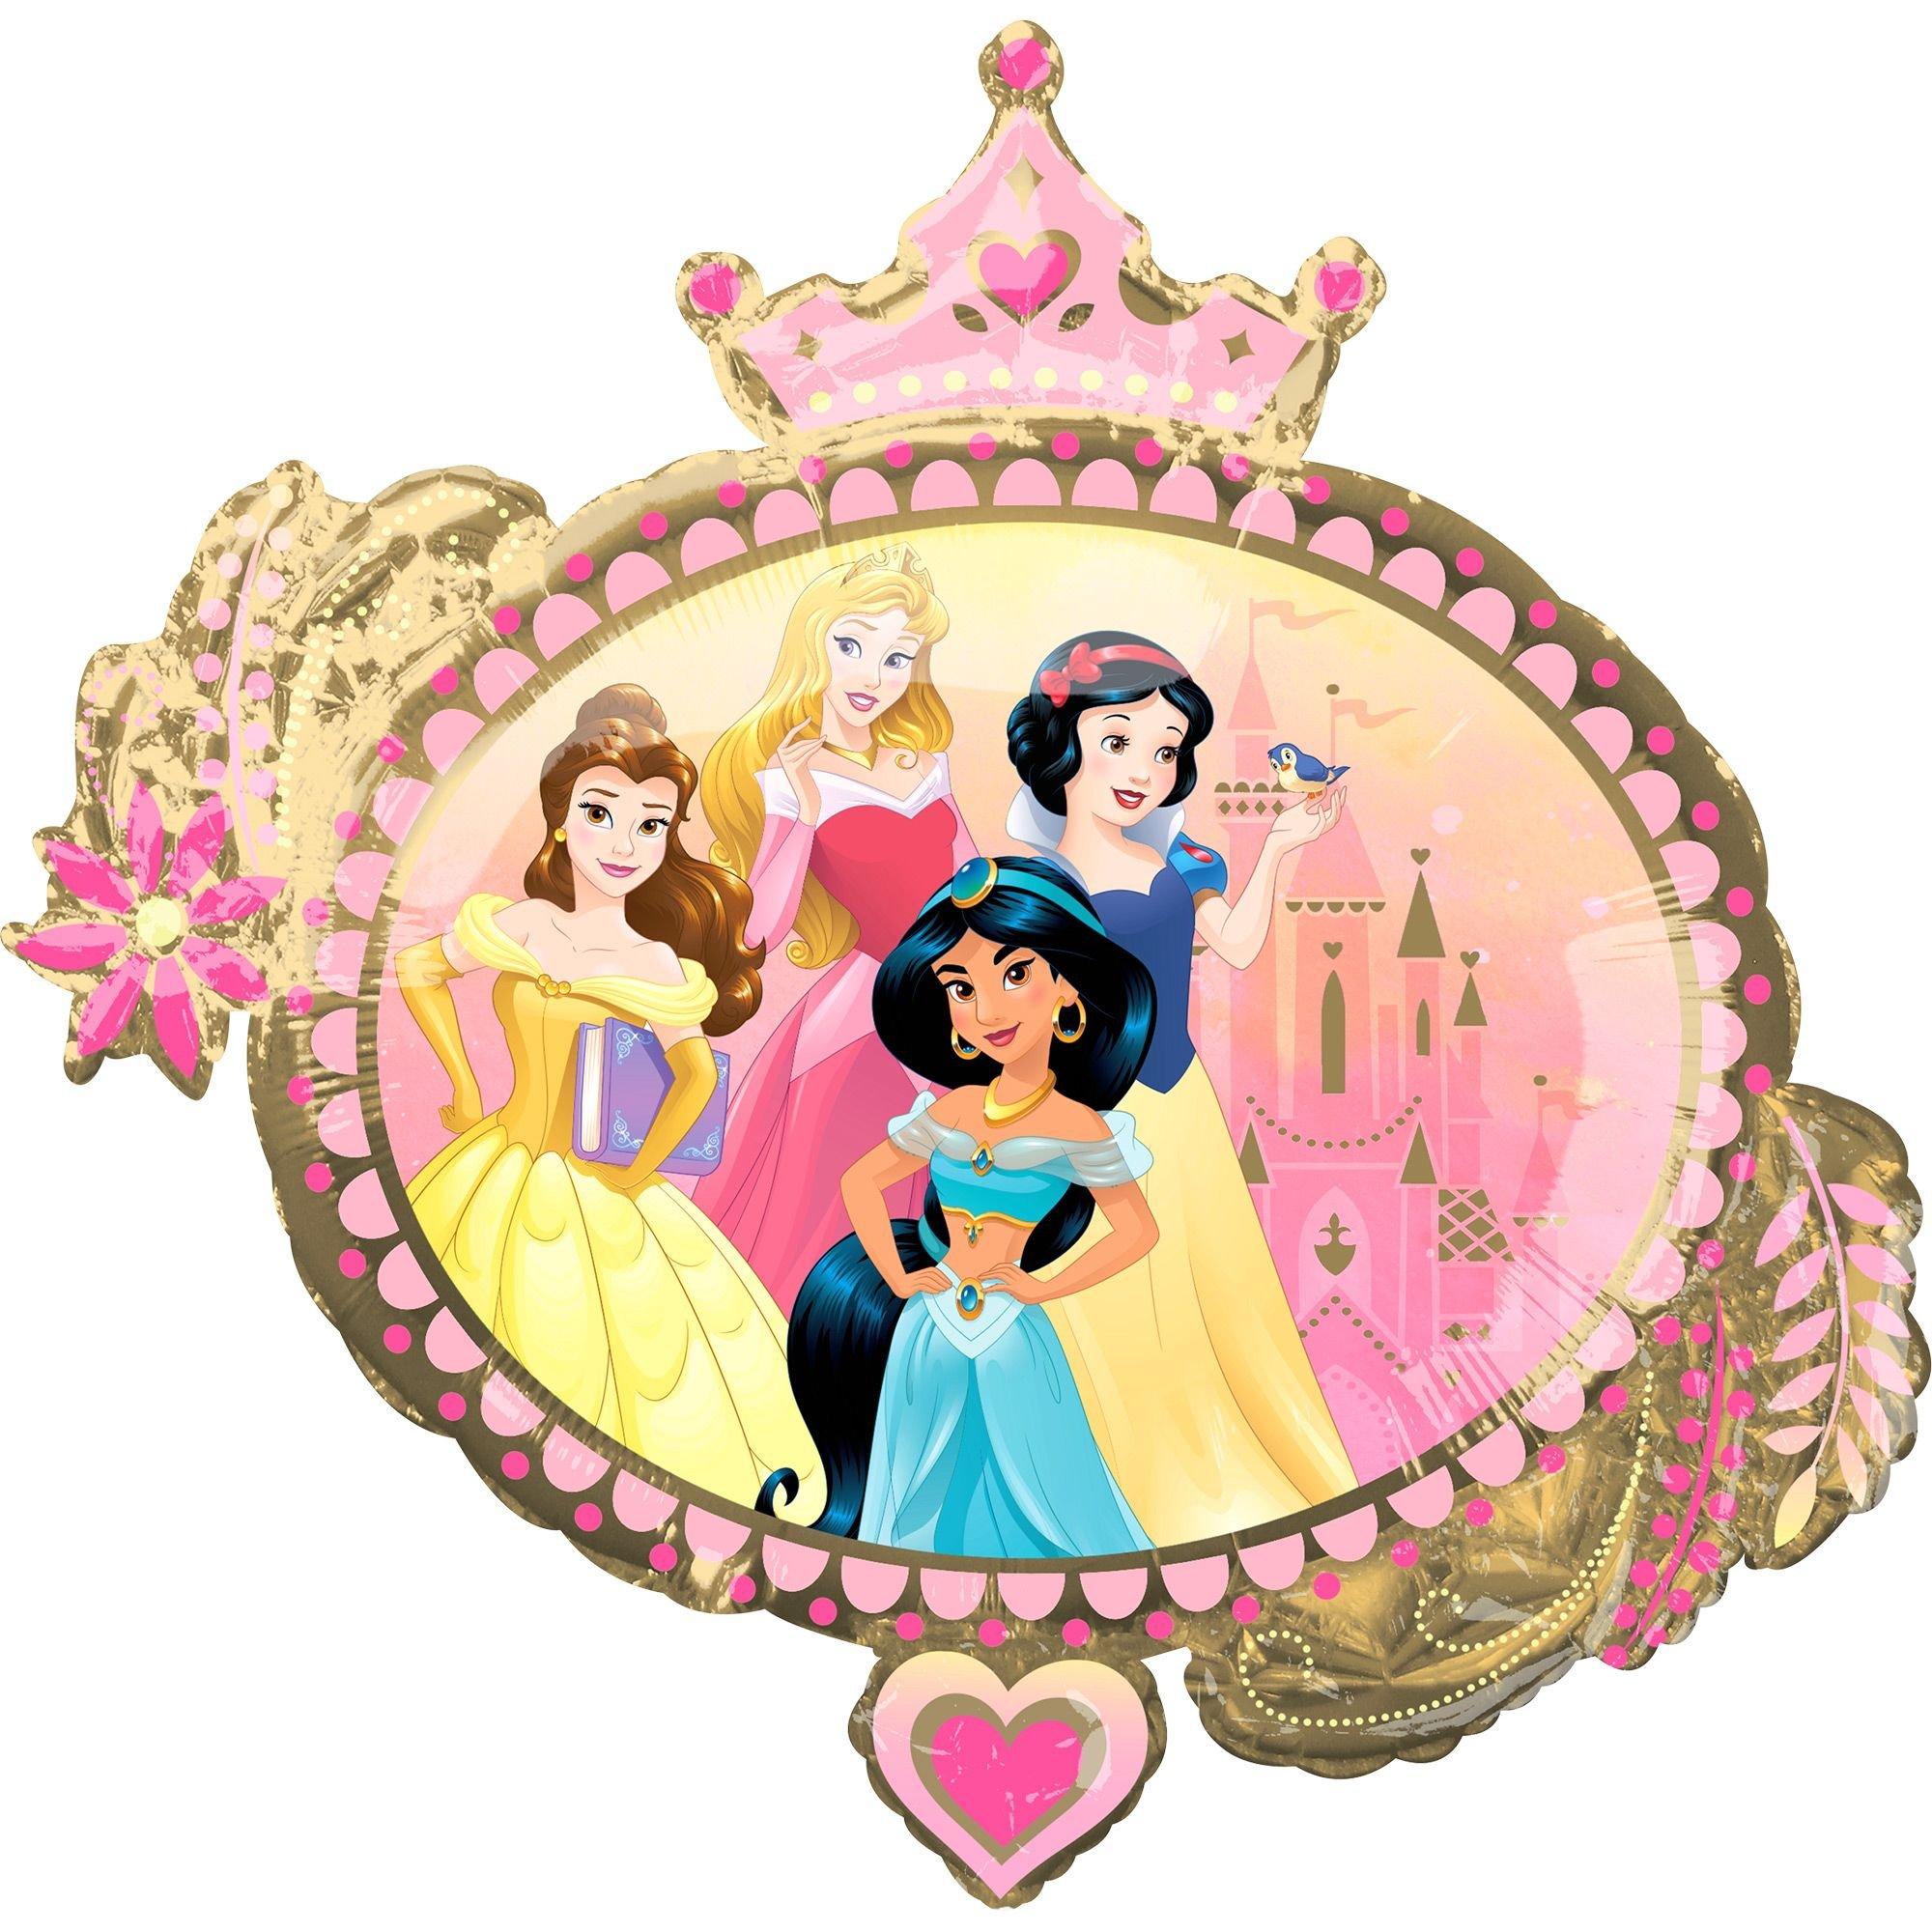 Disney Princess Once Upon A Time Metallic Favor Cup 1ct